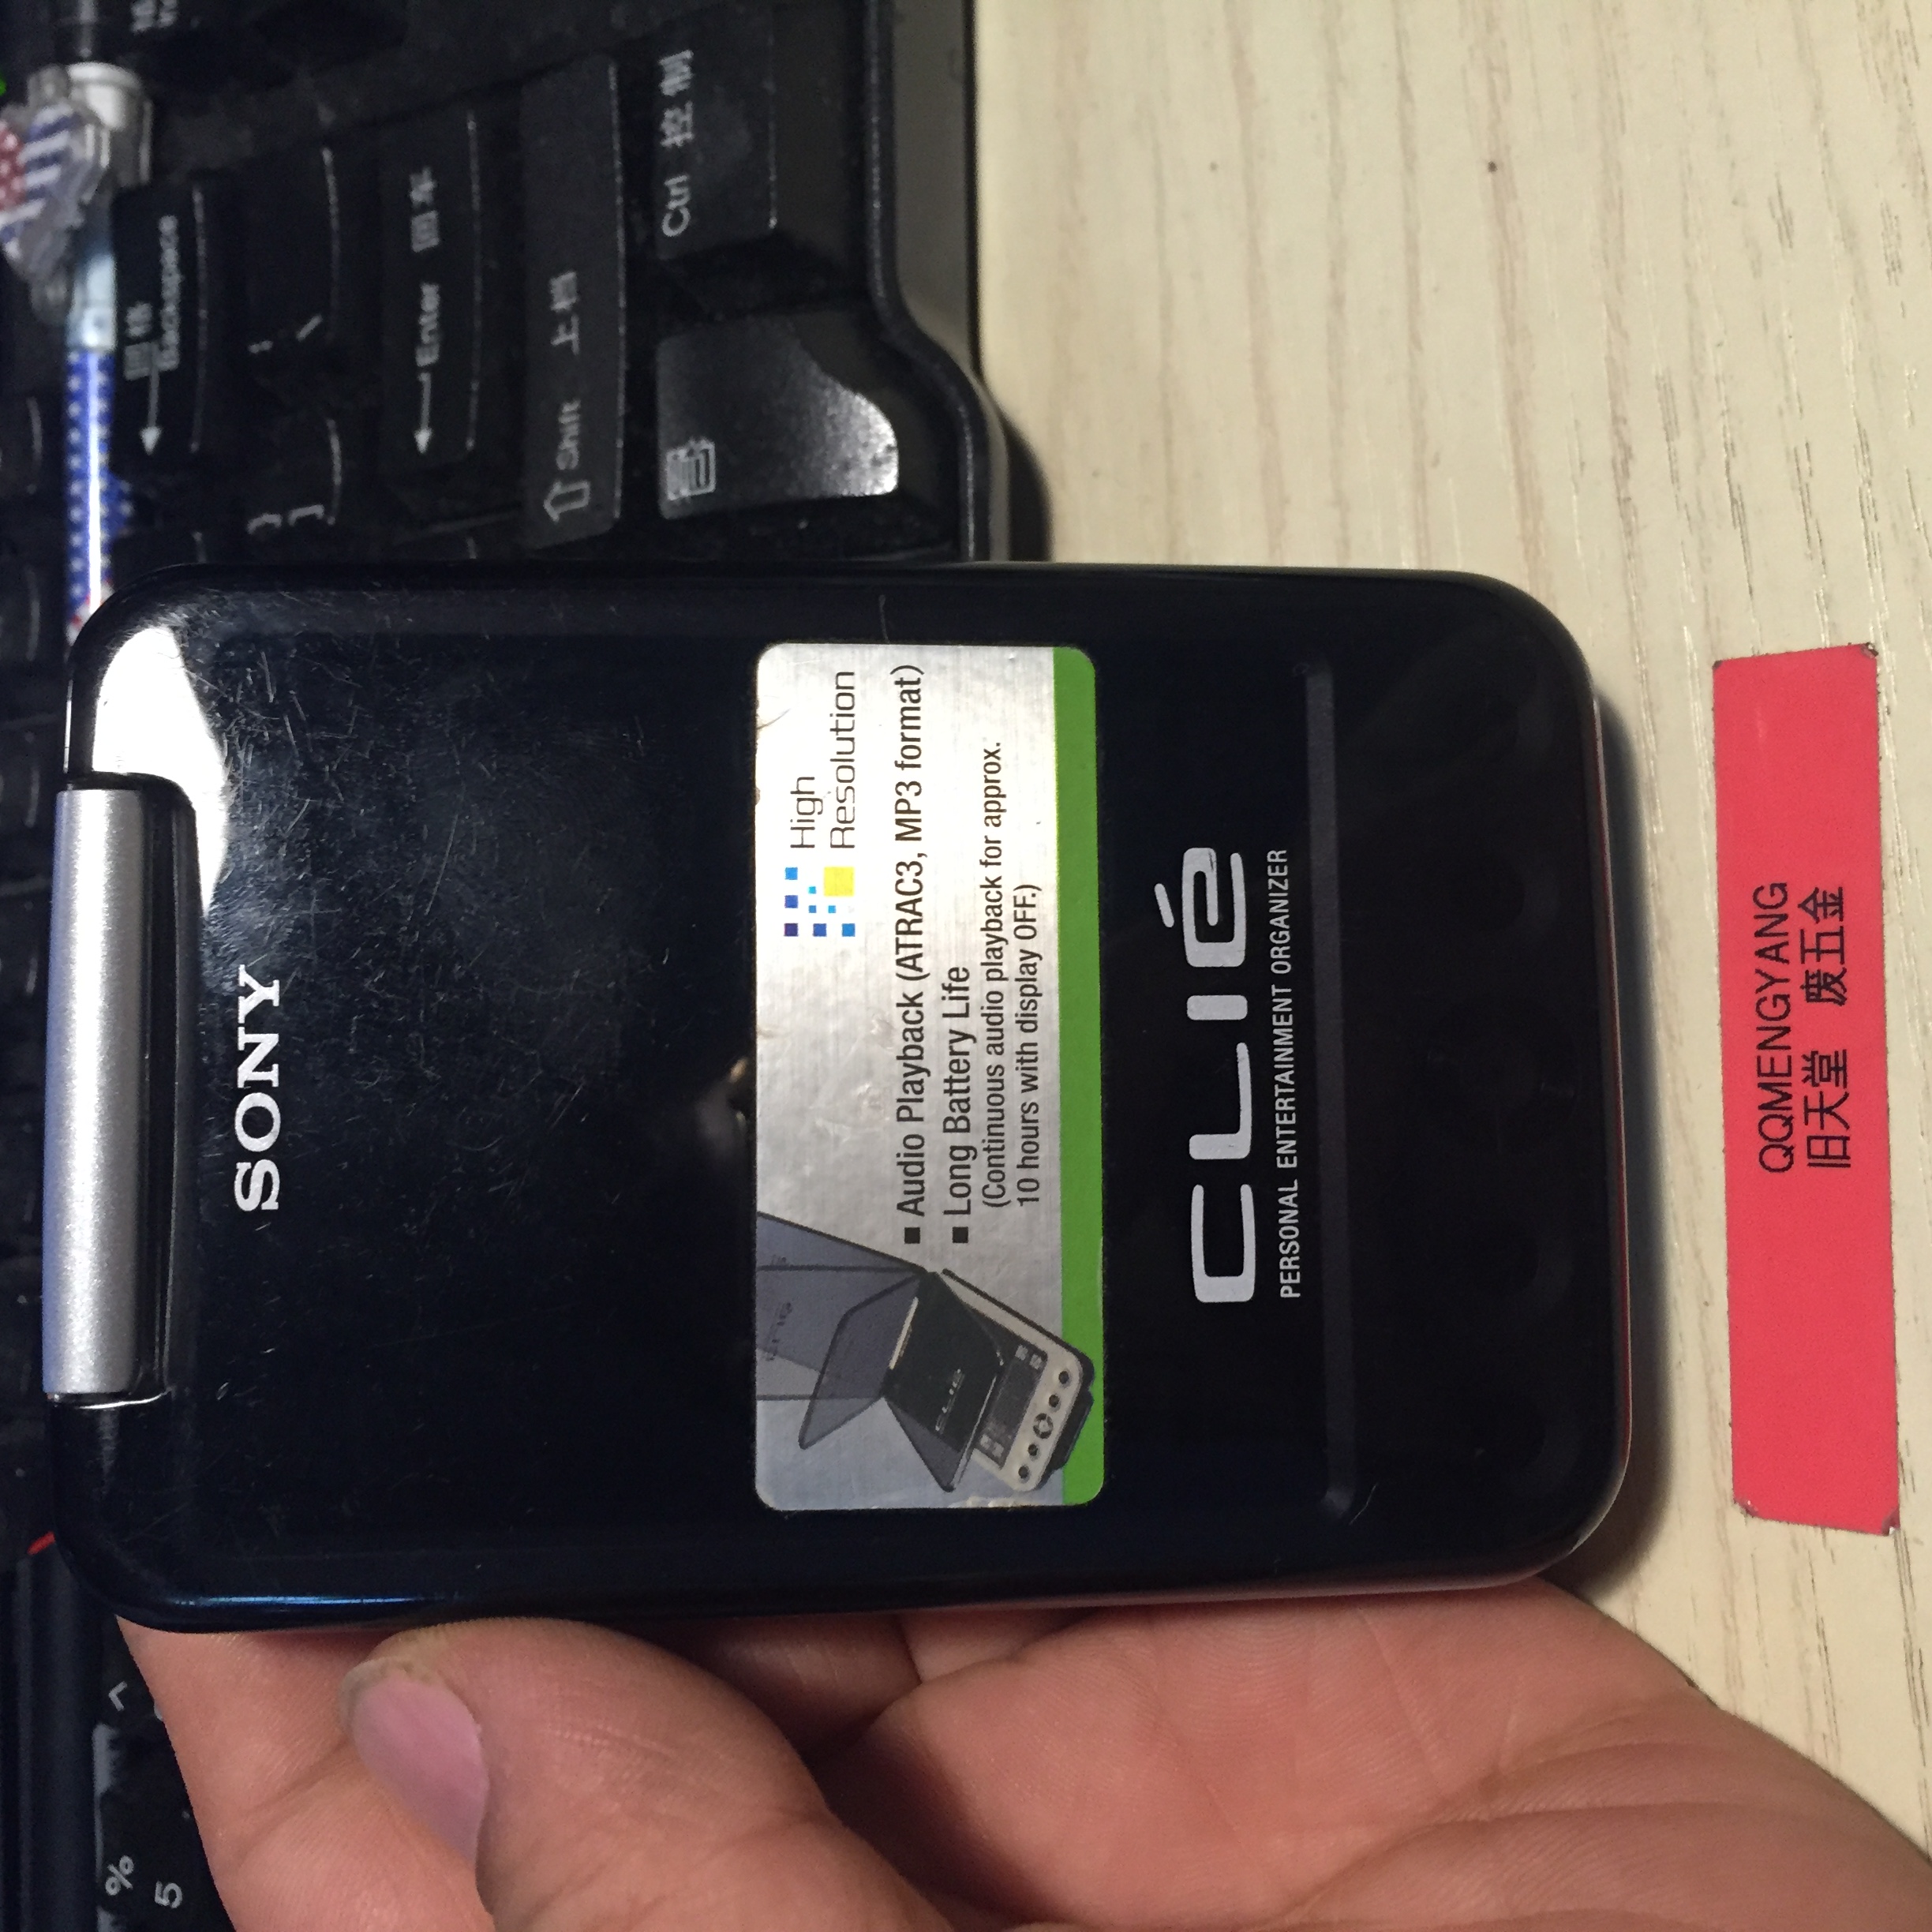 PEG-SJ33 CLIE PALM PDA ޴ ǻ -